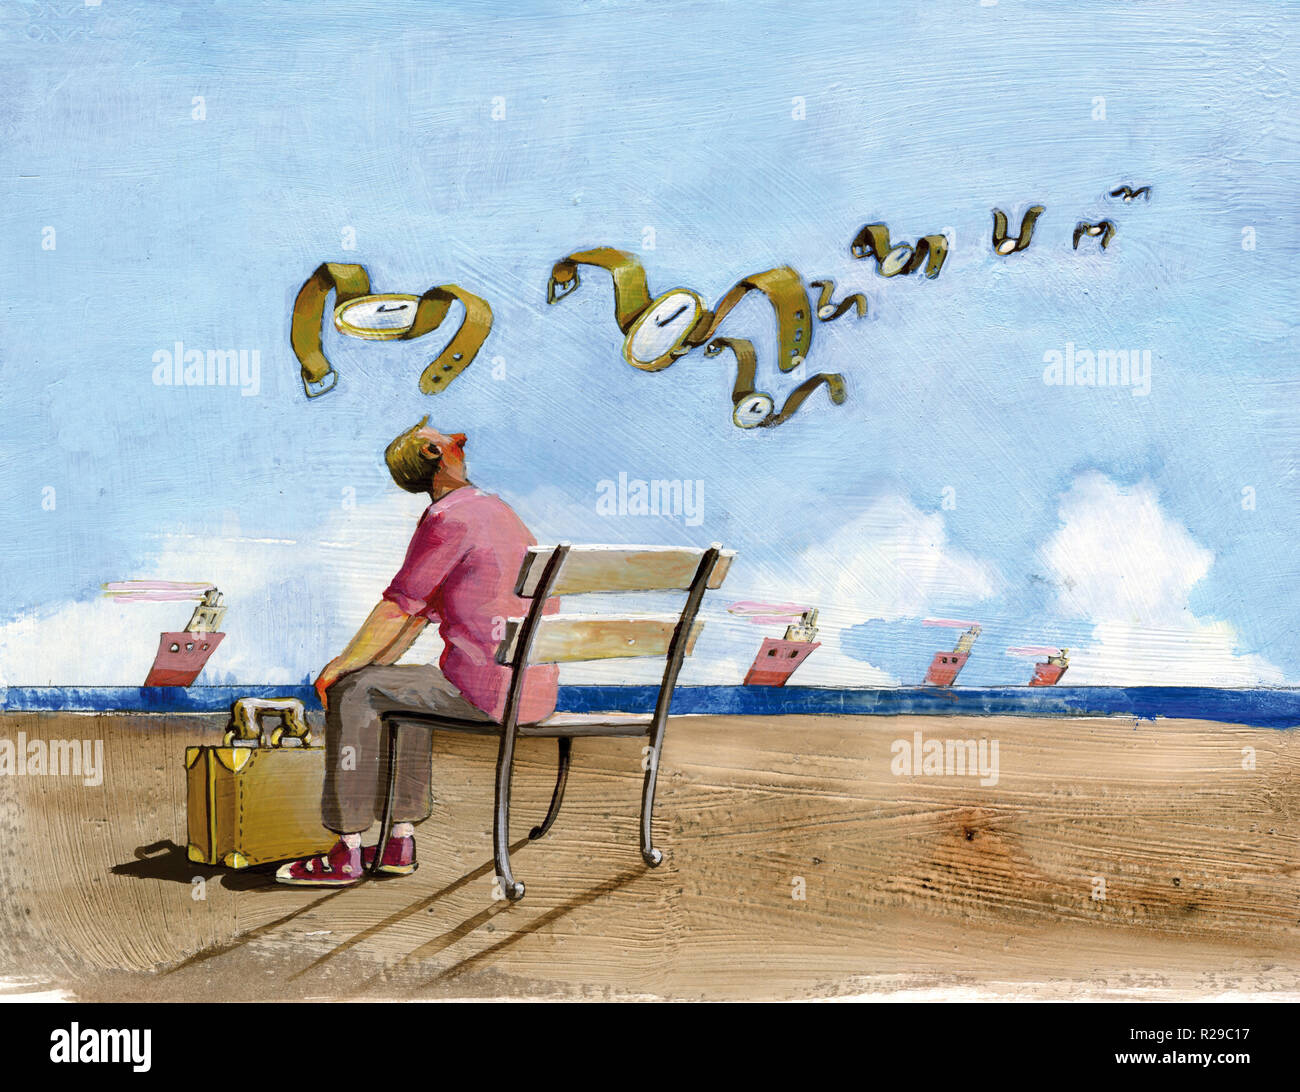 Visto muchacho de hombros se sentó en un banco en la orilla del mar con los pies una maleta, mira hacia el horizonte donde vuelan lejos algunos relojes Foto de stock